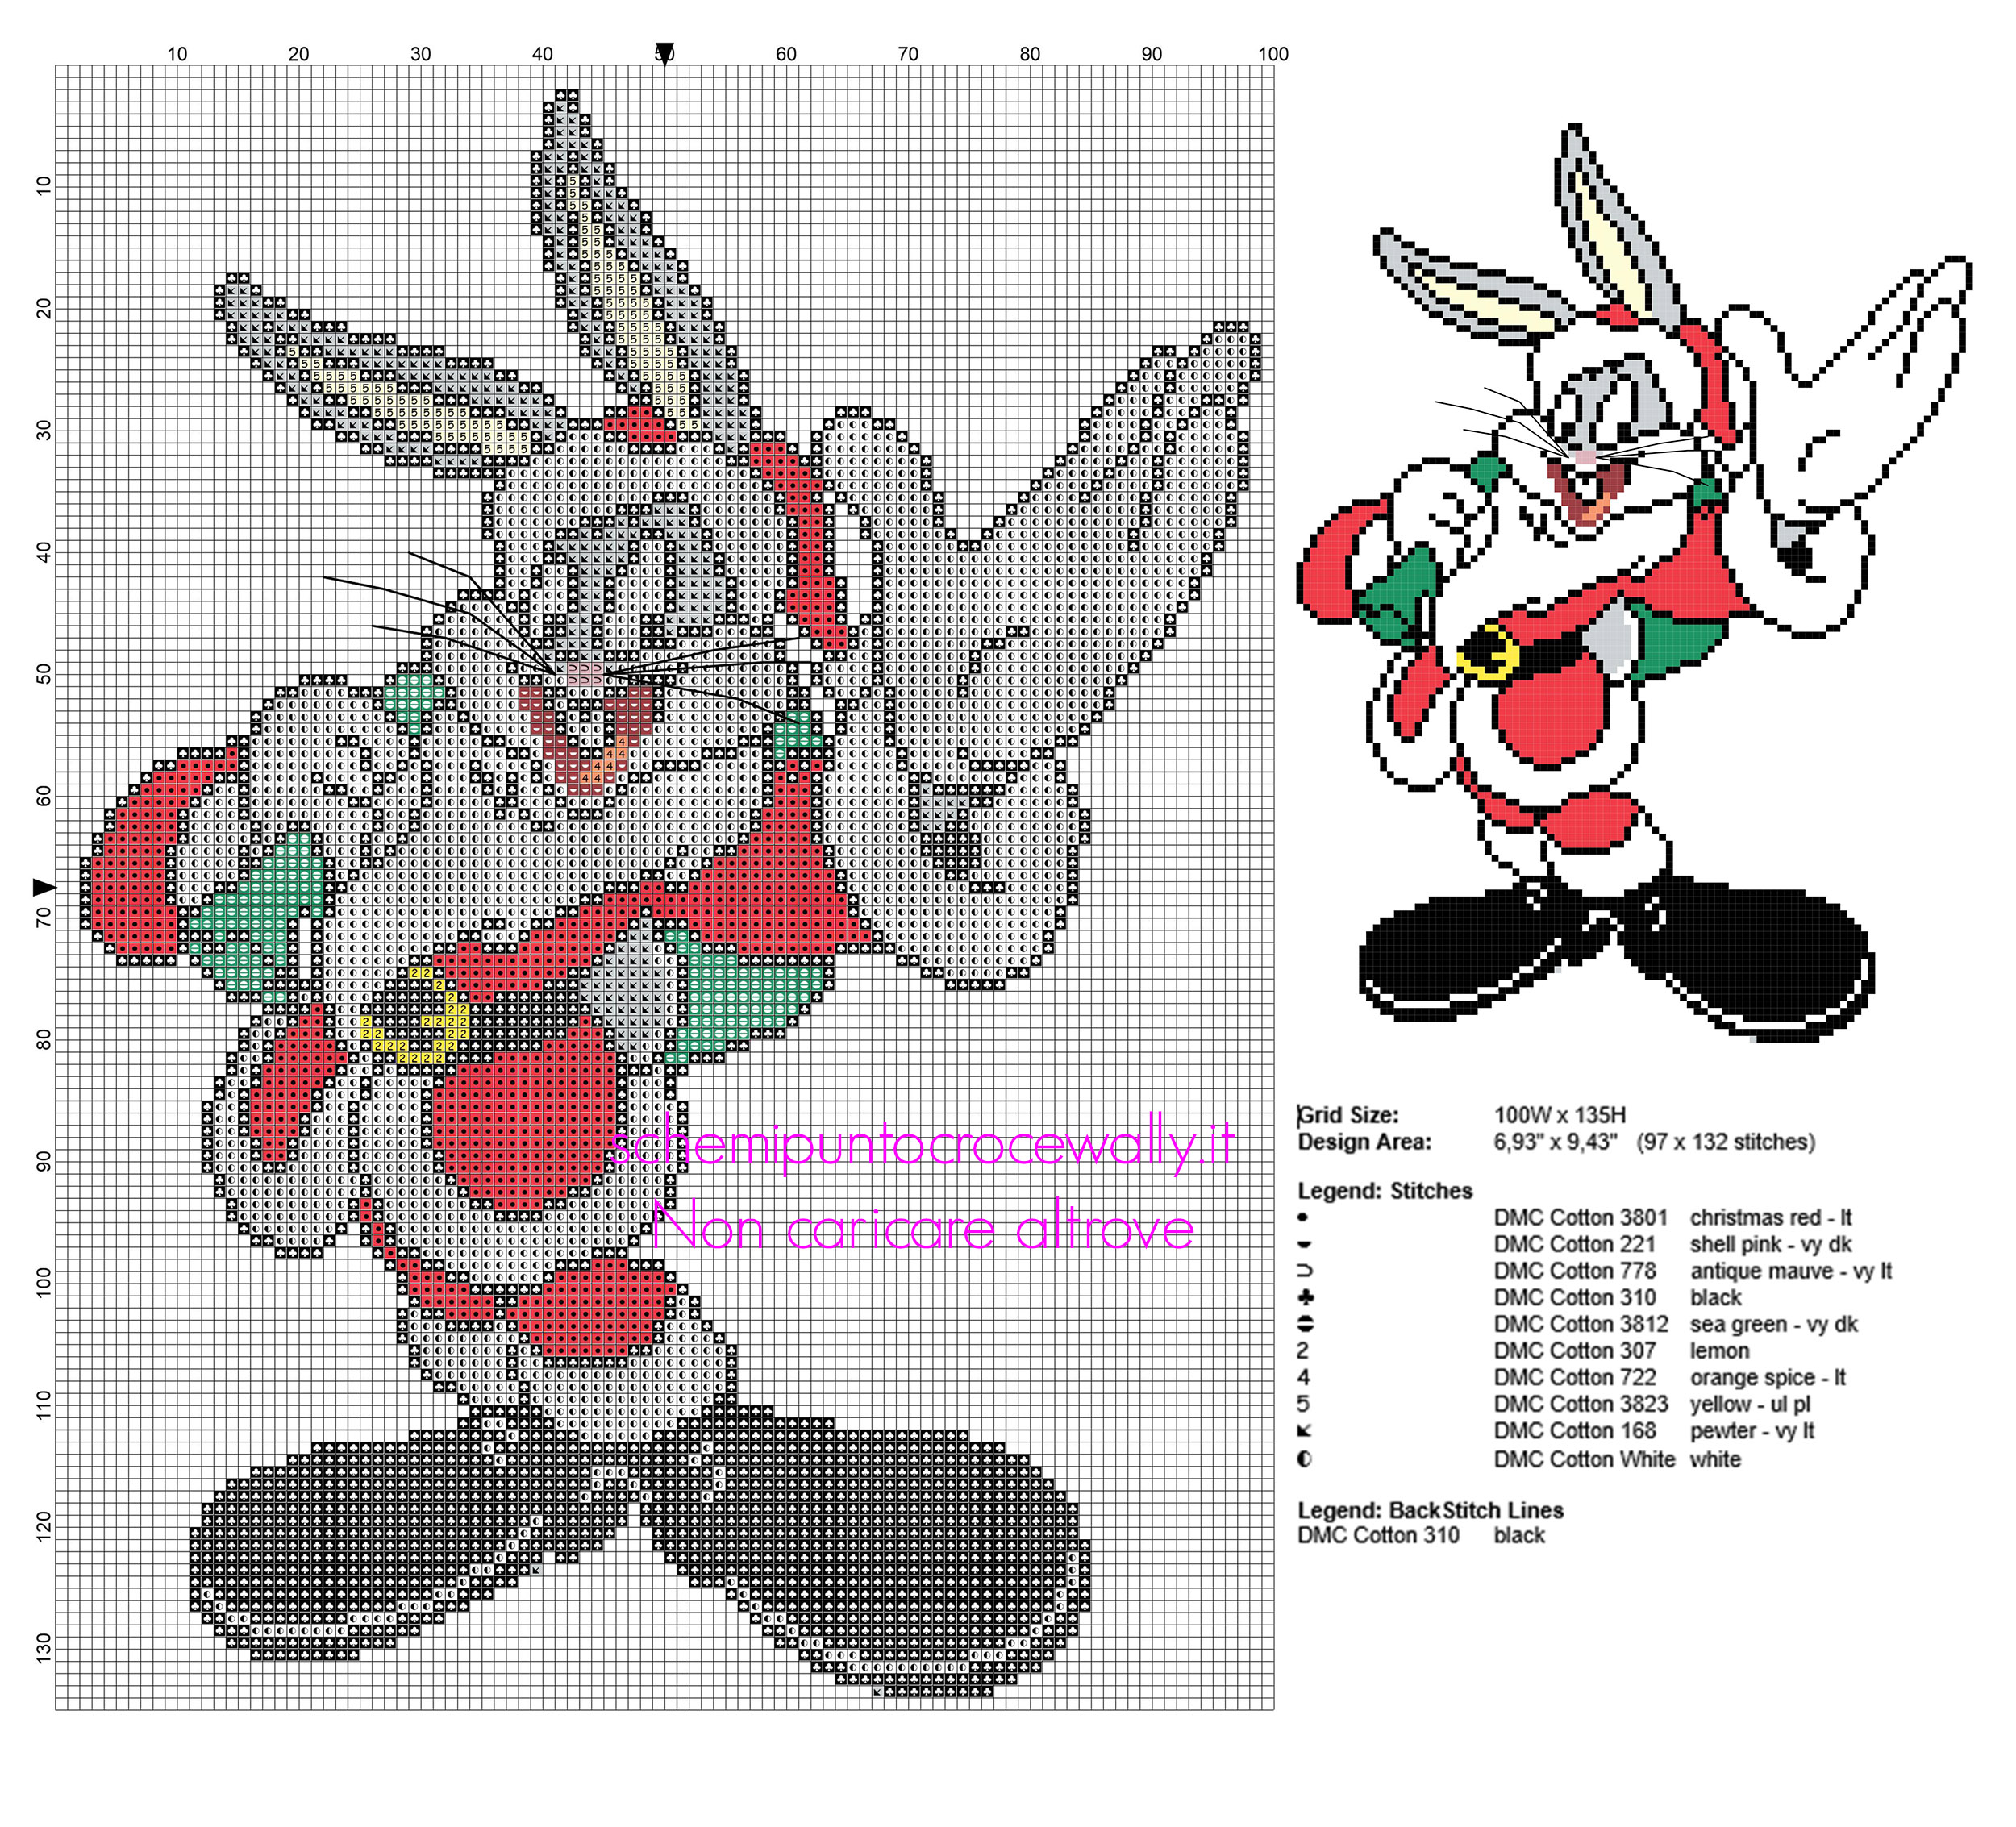 Bugs Bunny con abiti natalizi schema punto croce gratis